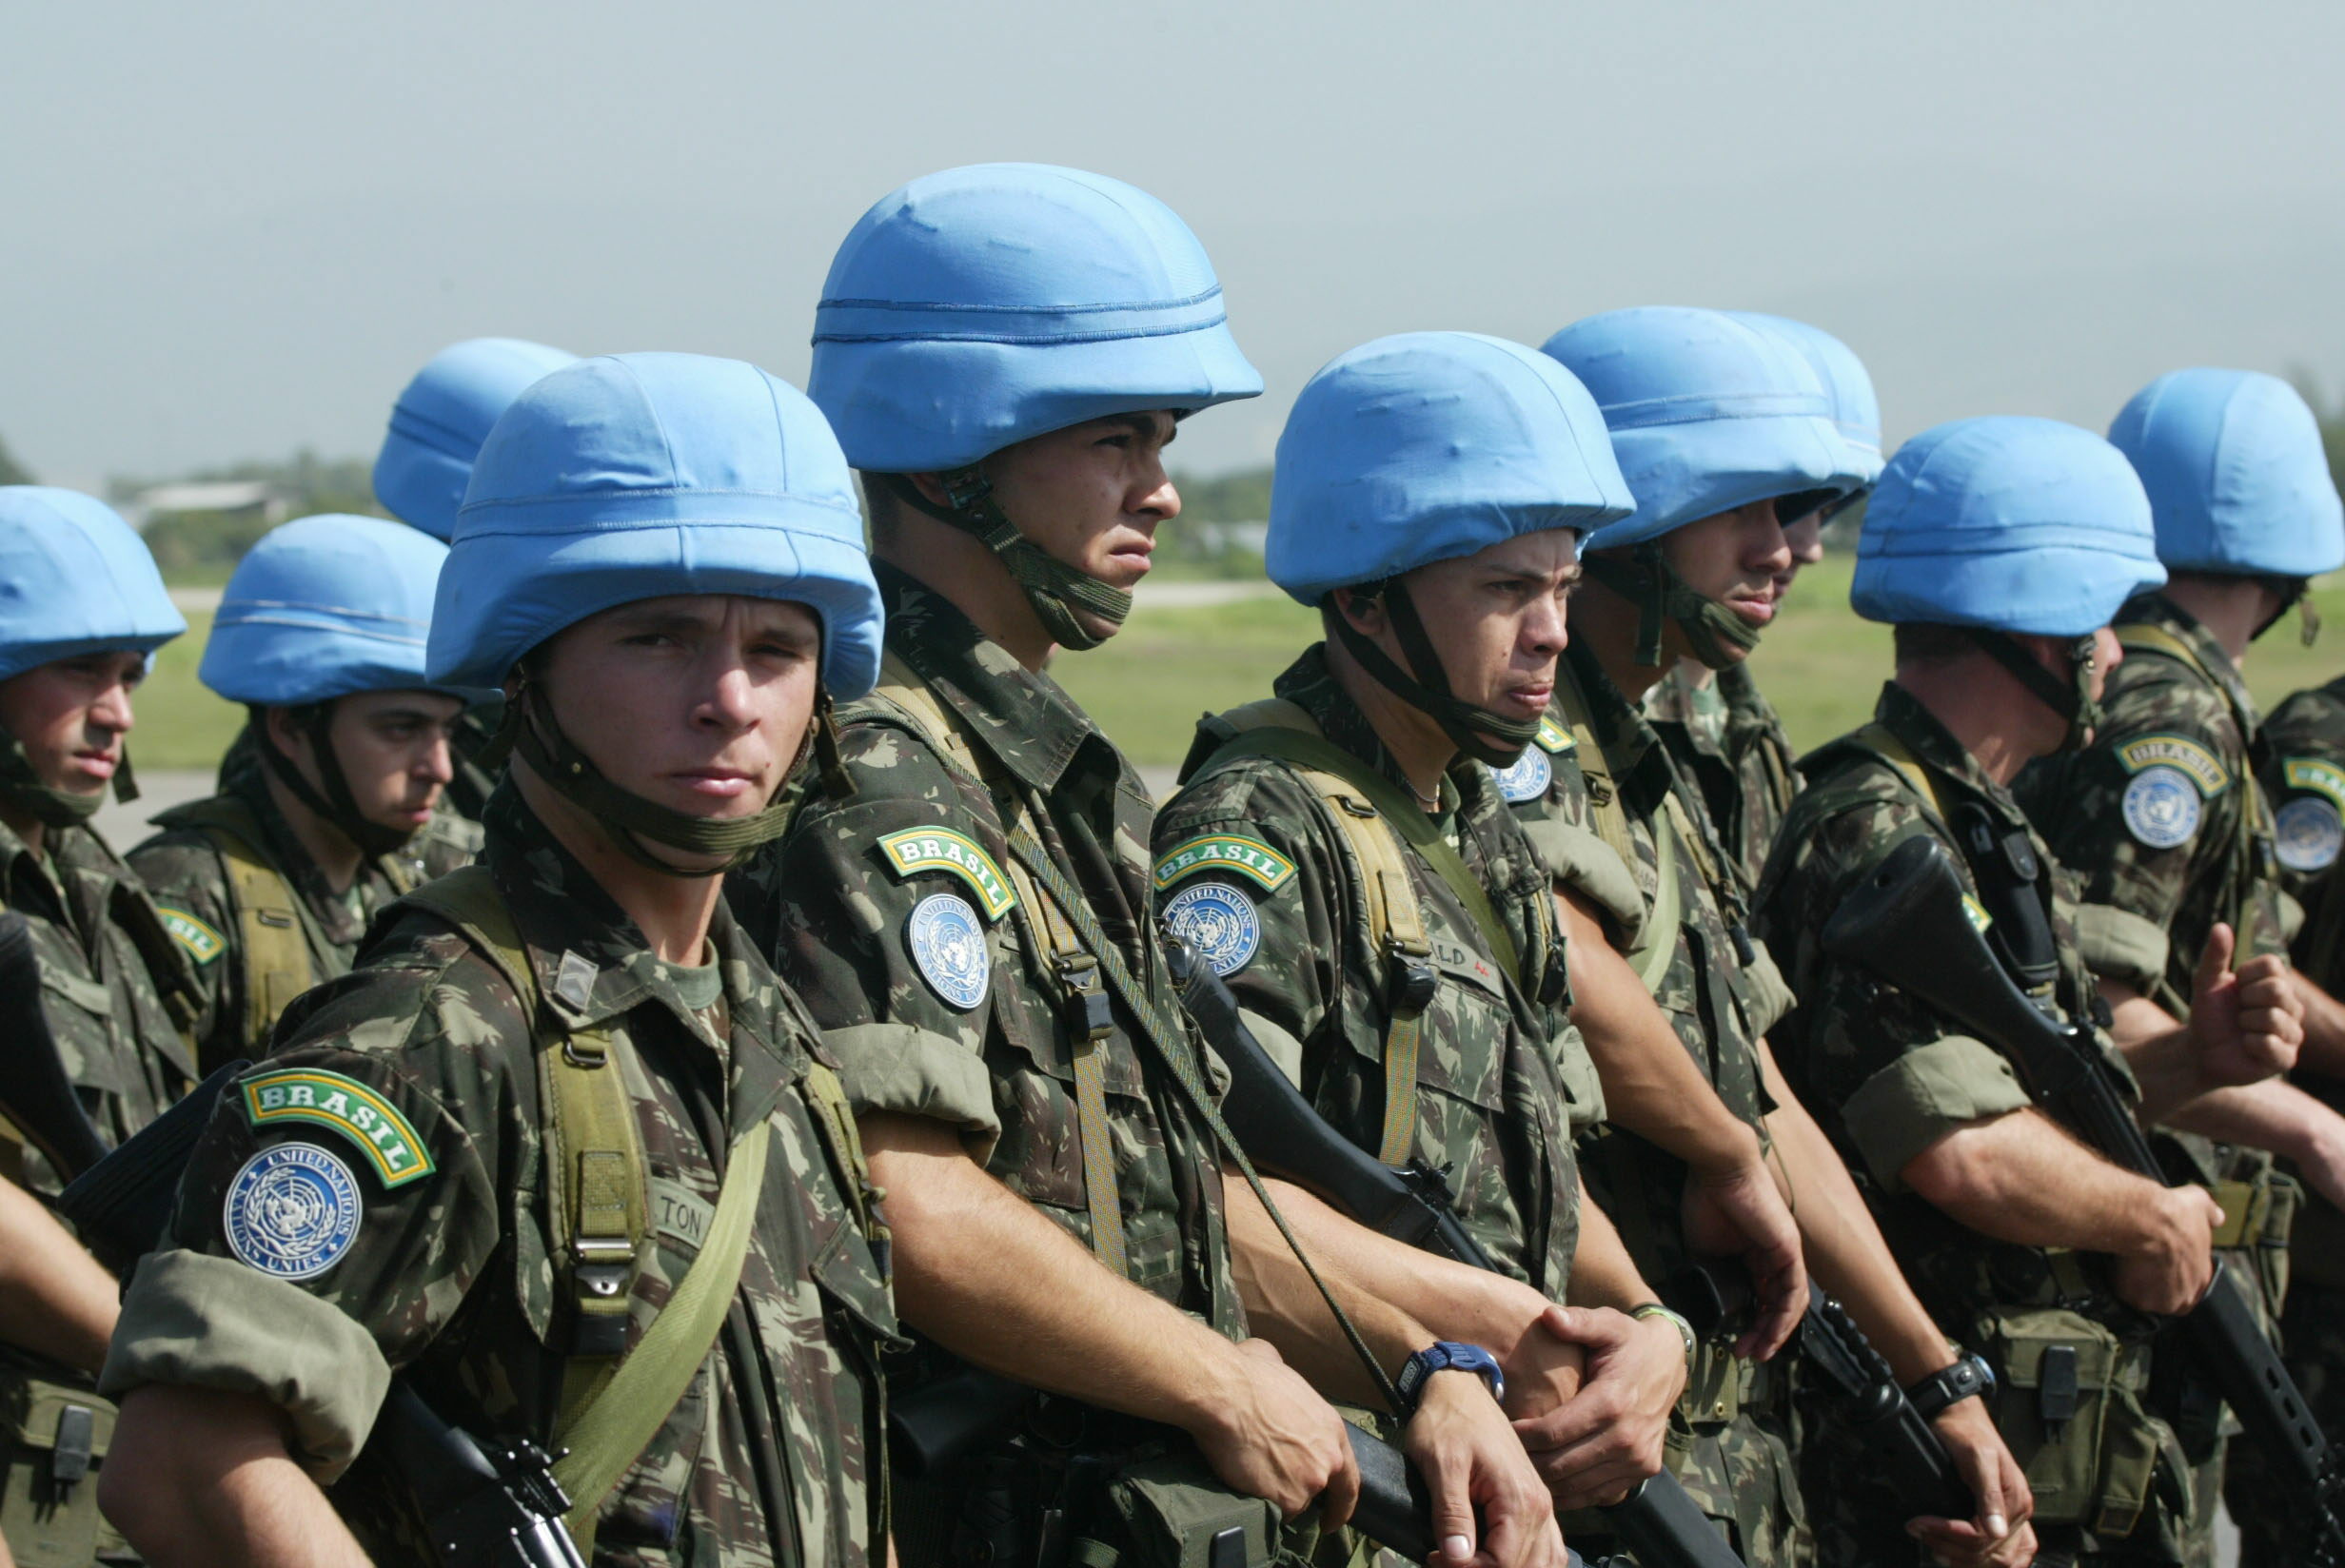 La medida de la ONU para hacer frente a los abusos sexuales cometidos por los cascos azules fue aprobada con 14 votos a favor y la abstención de Egipto.